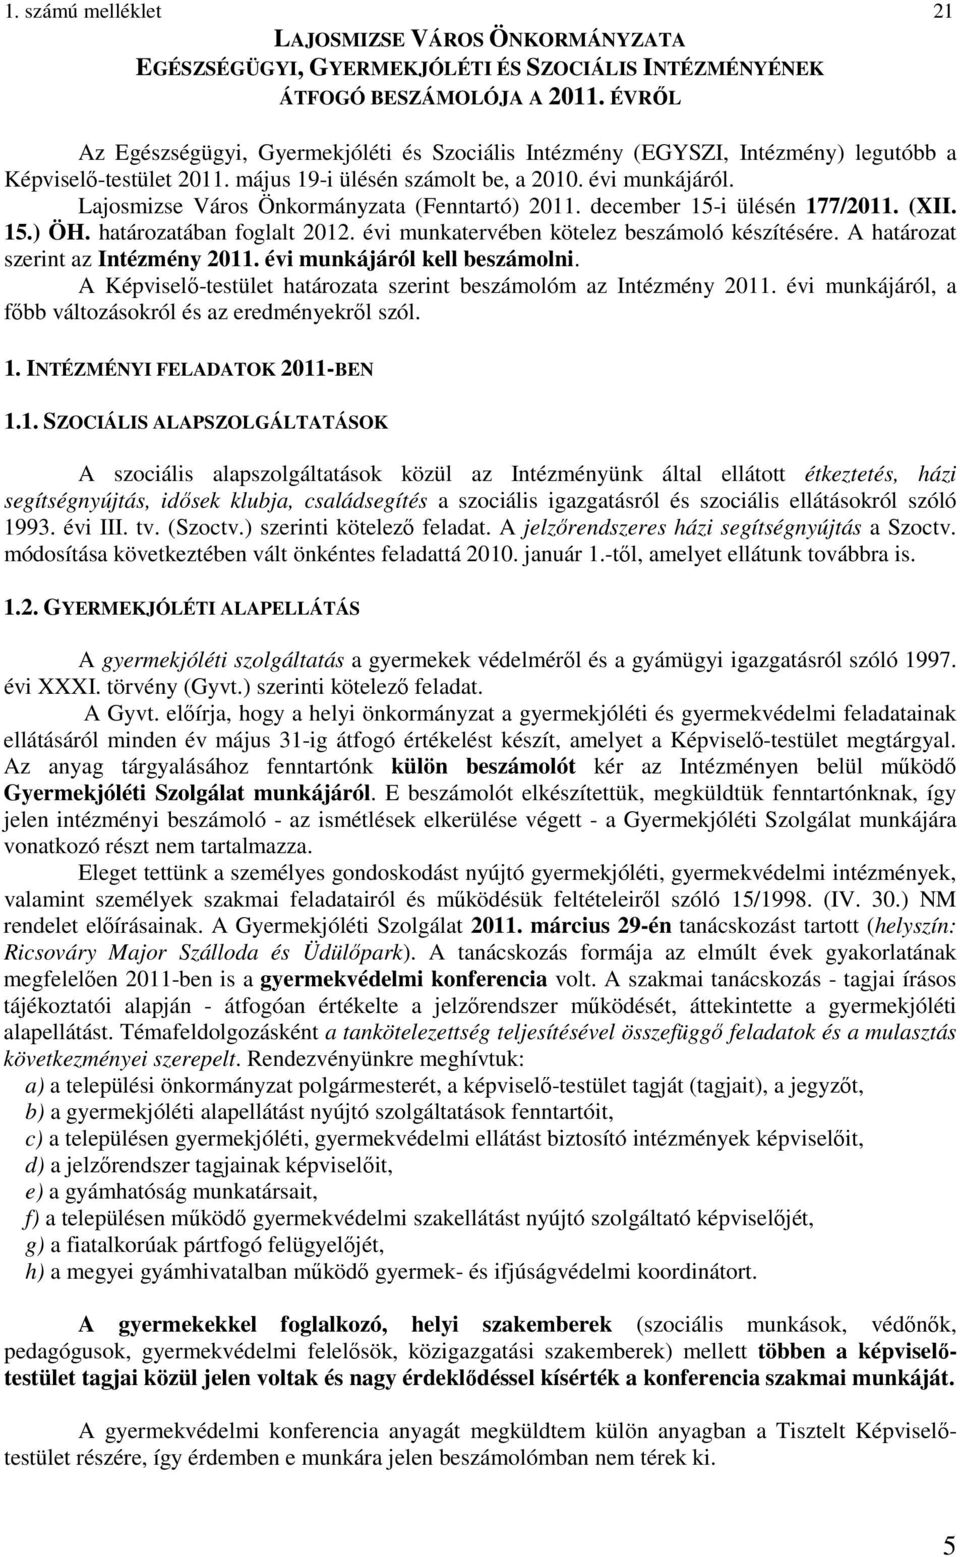 Lajosmizse Város Önkormányzata (Fenntartó) 2011. december 15-i ülésén 177/2011. (XII. 15.) ÖH. határozatában foglalt 2012. évi munkatervében kötelez beszámoló készítésére.